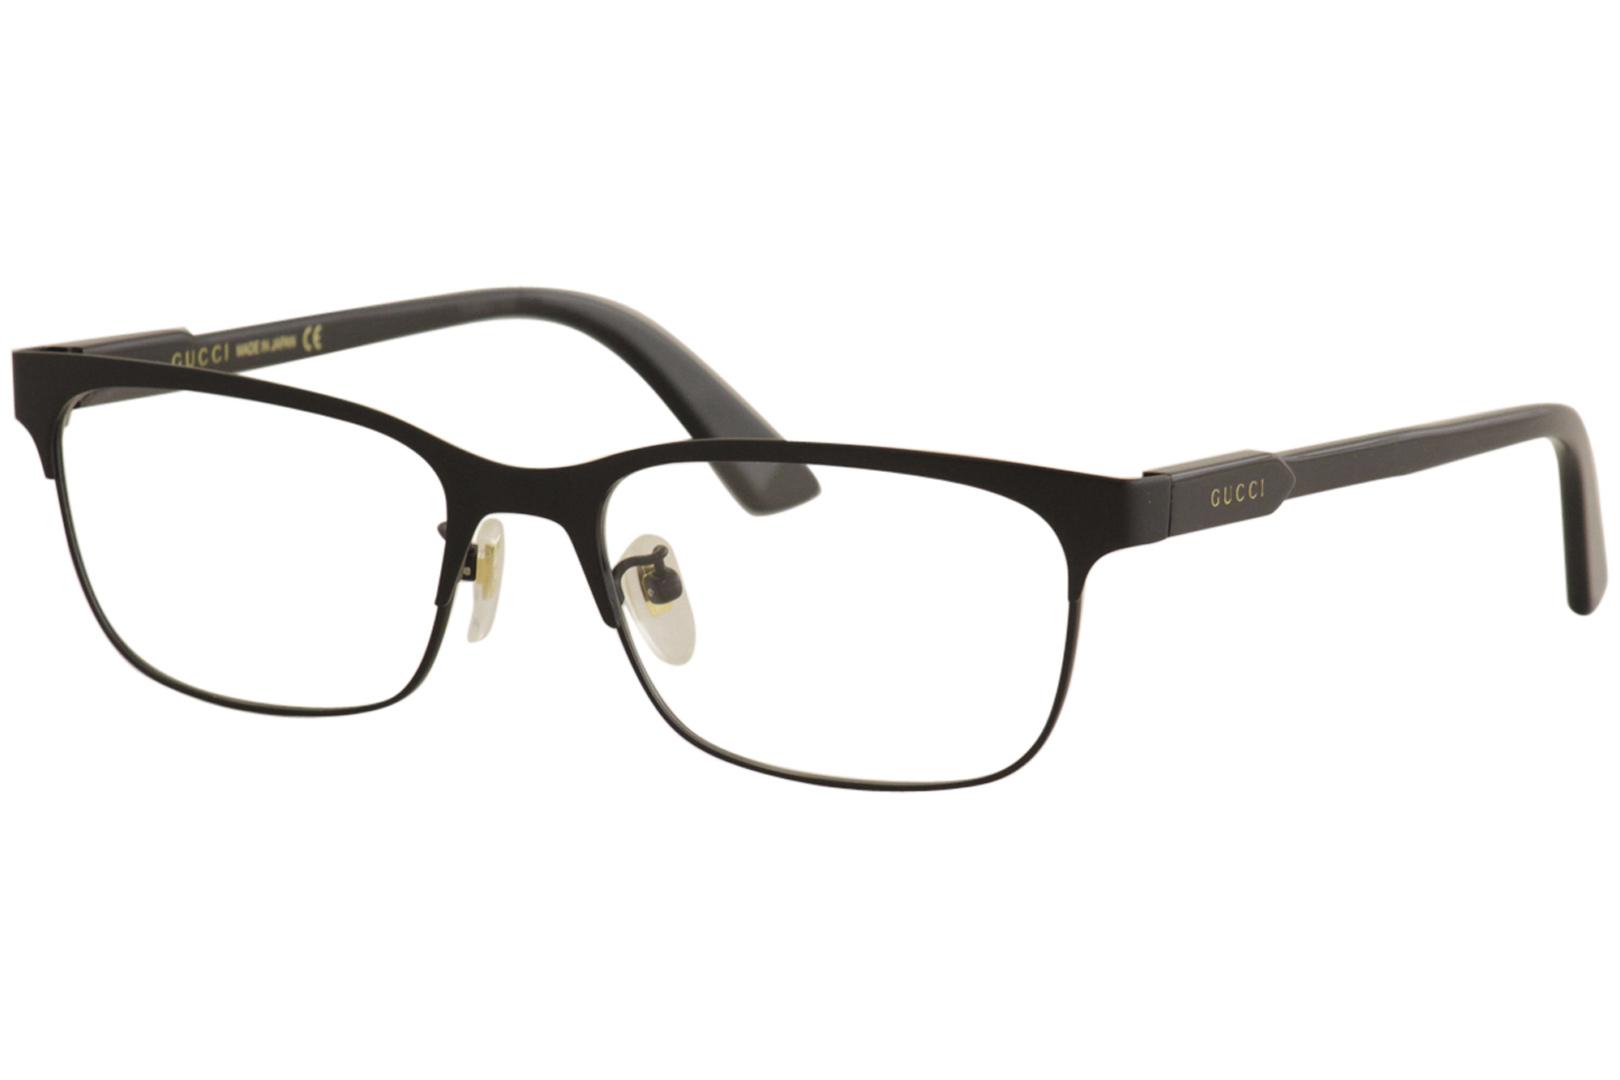 gucci titanium eyeglasses